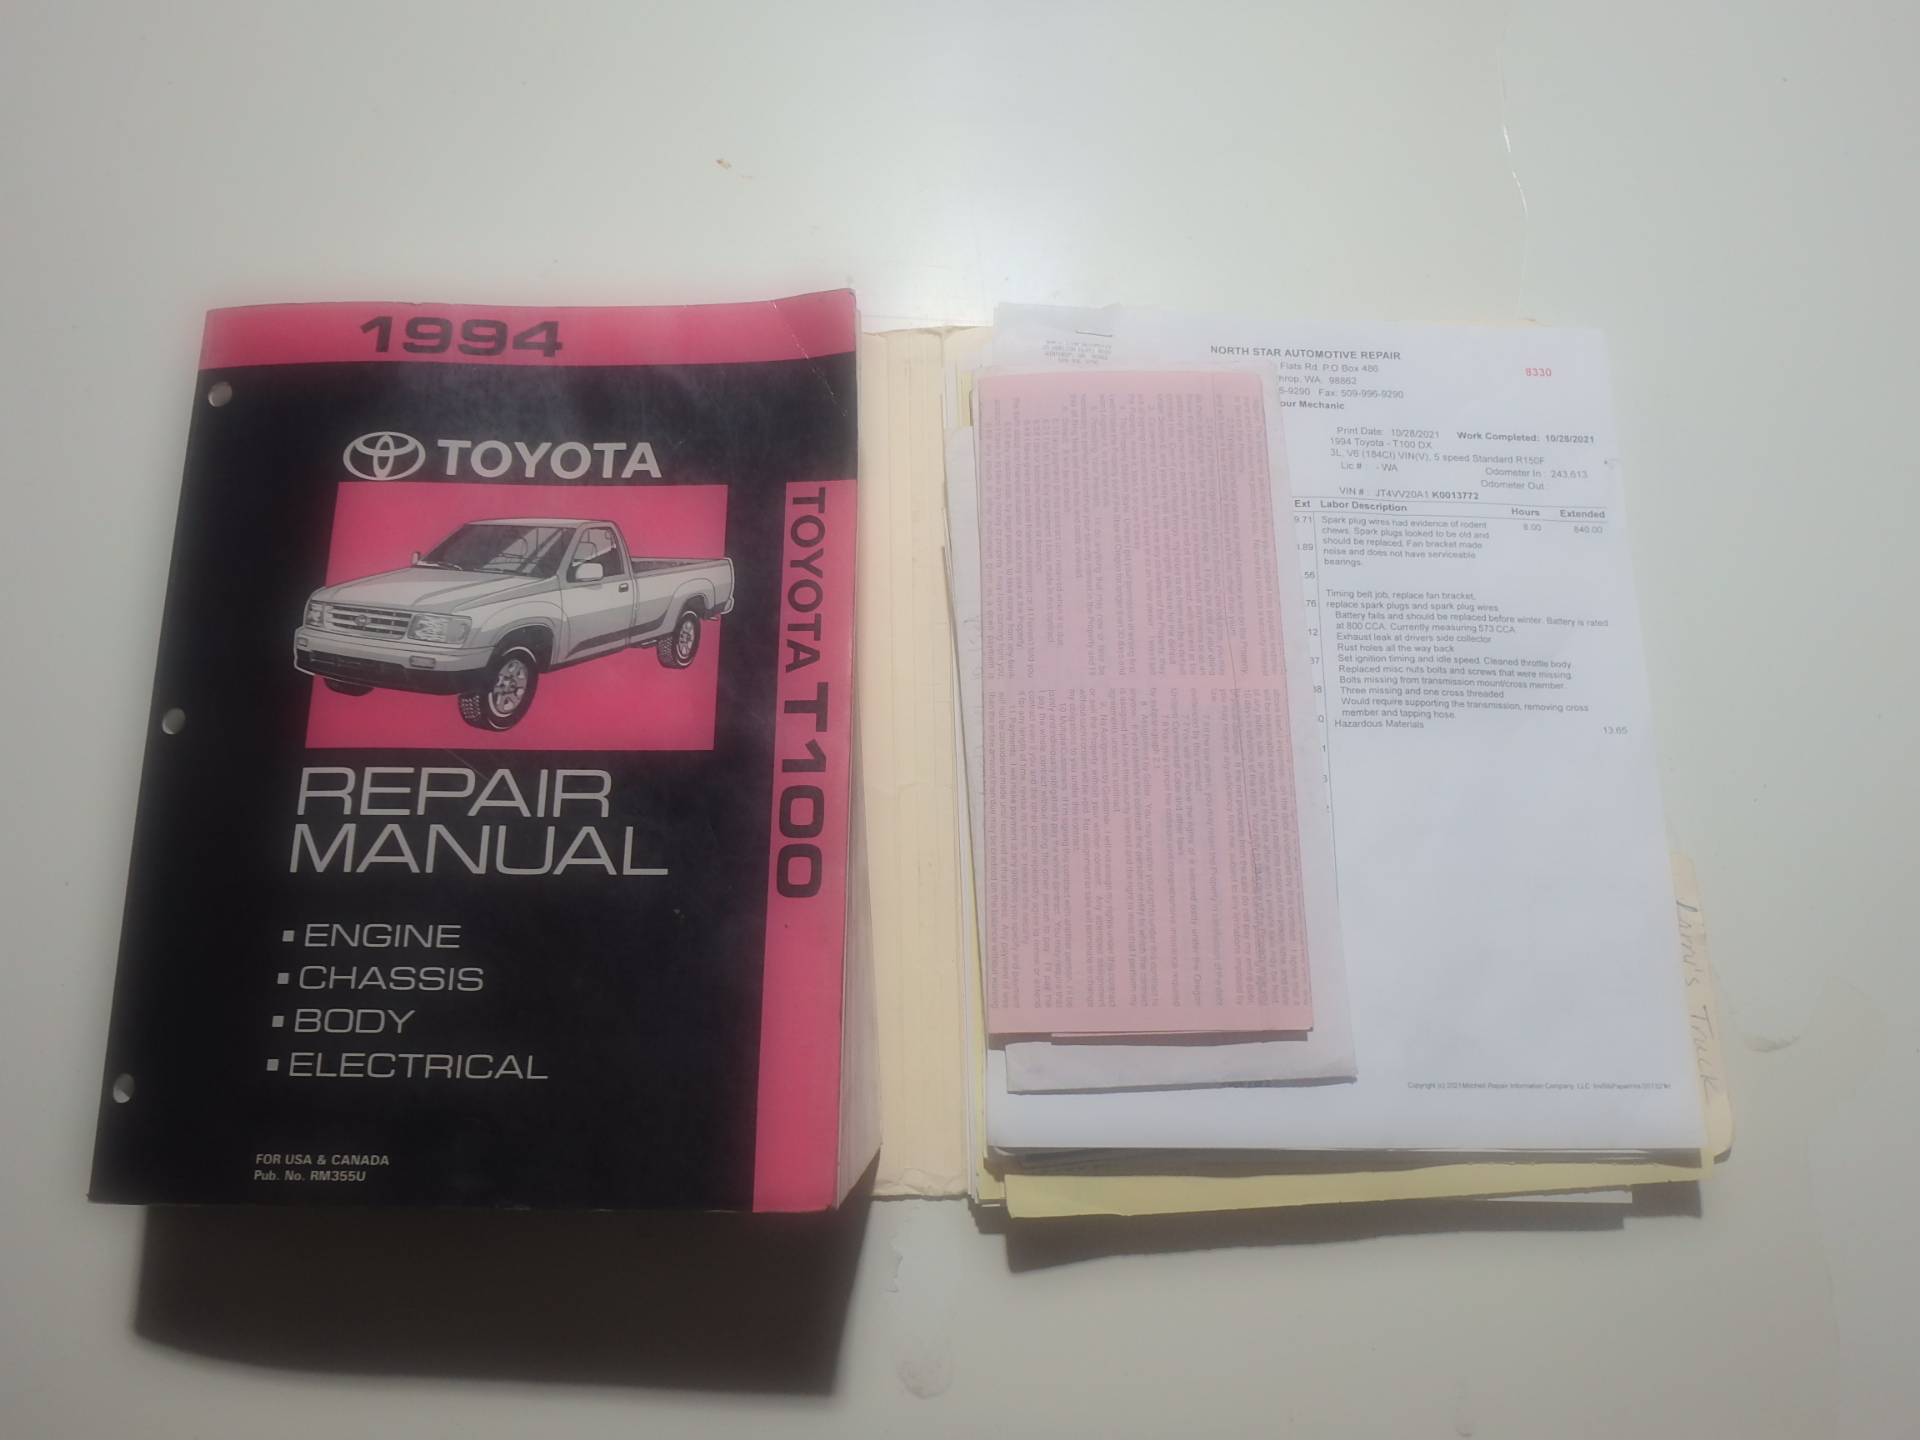 Factory repair manual